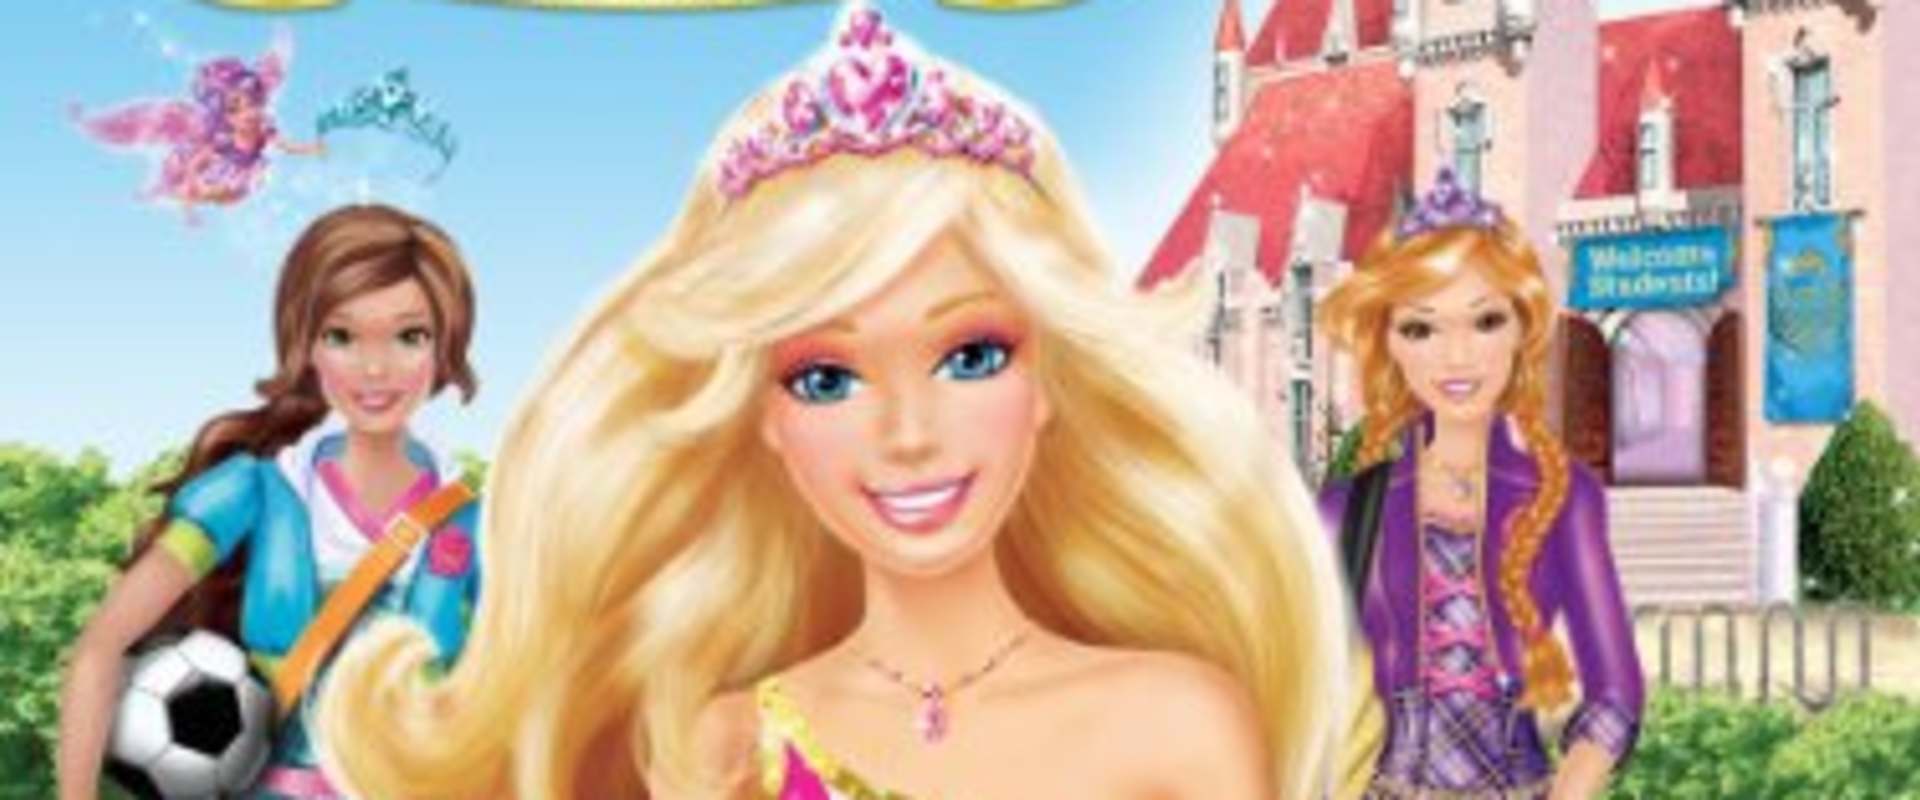 Barbie: Princess Charm School on Netflix Today! | NetflixMovies.com